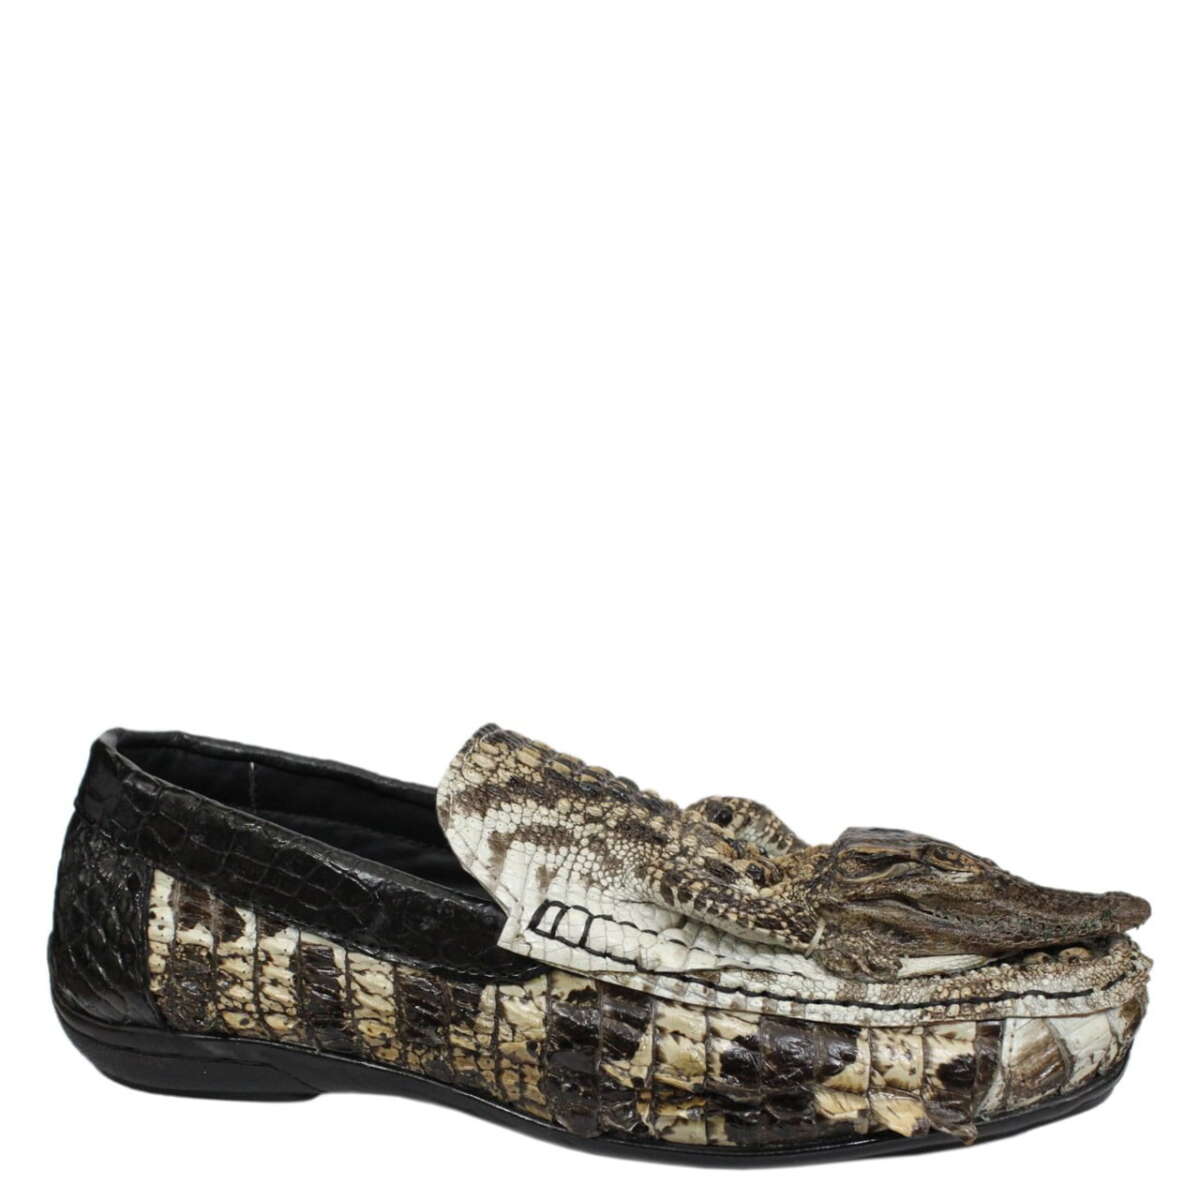 Men's crocodile leather original shoe S873